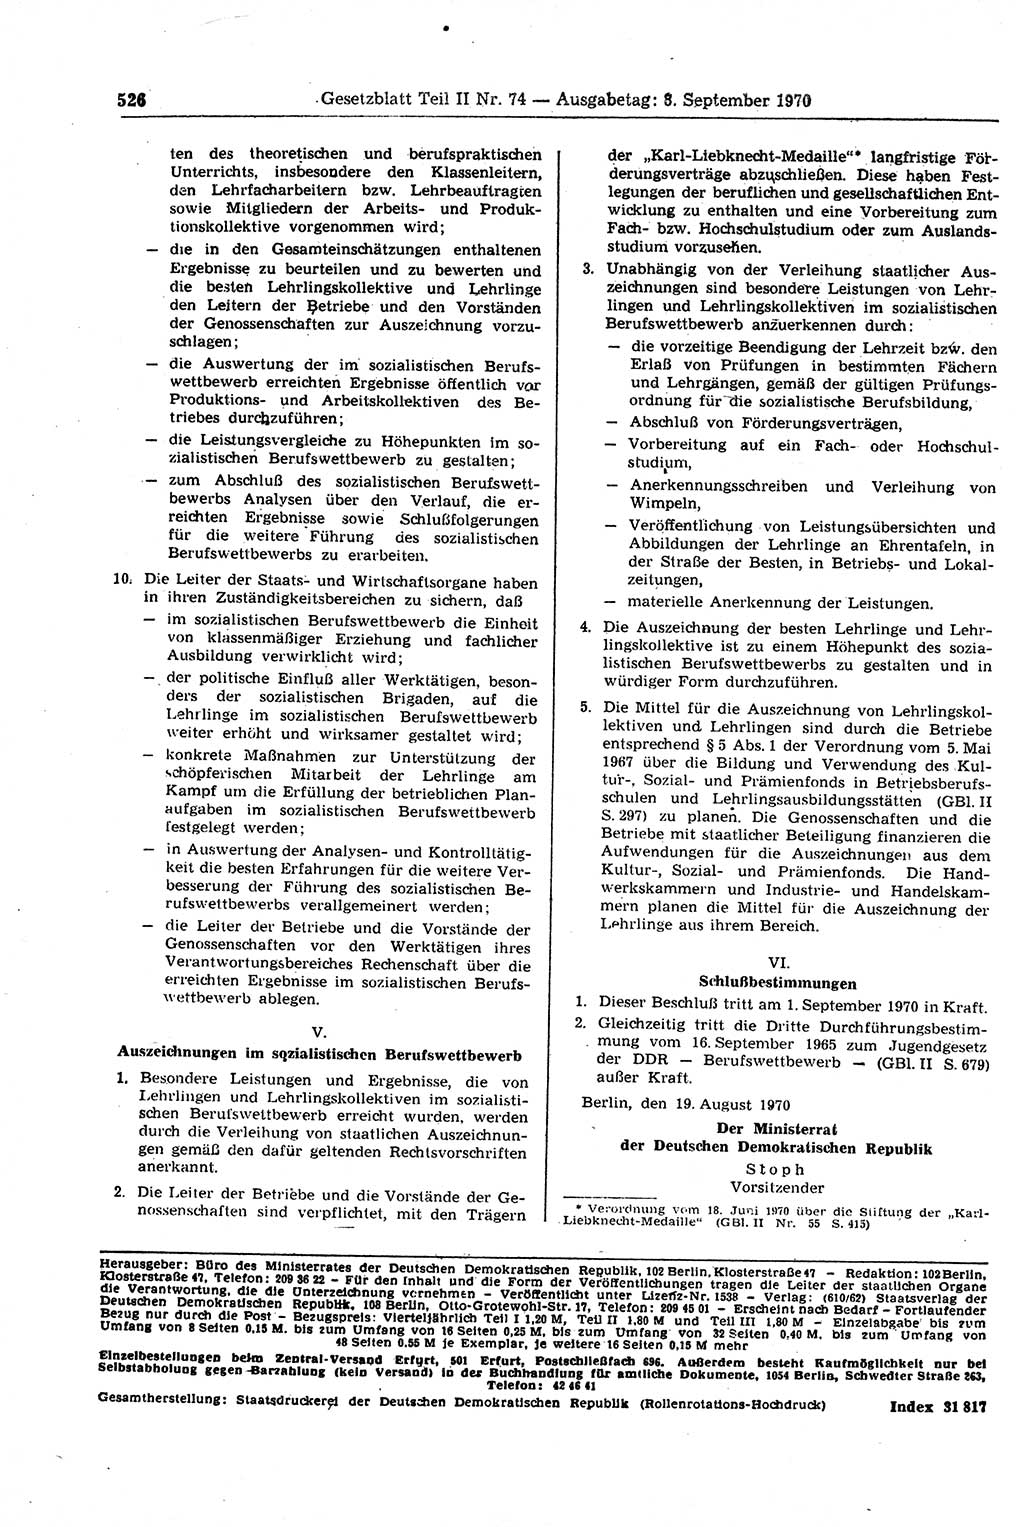 Gesetzblatt (GBl.) der Deutschen Demokratischen Republik (DDR) Teil ⅠⅠ 1970, Seite 526 (GBl. DDR ⅠⅠ 1970, S. 526)